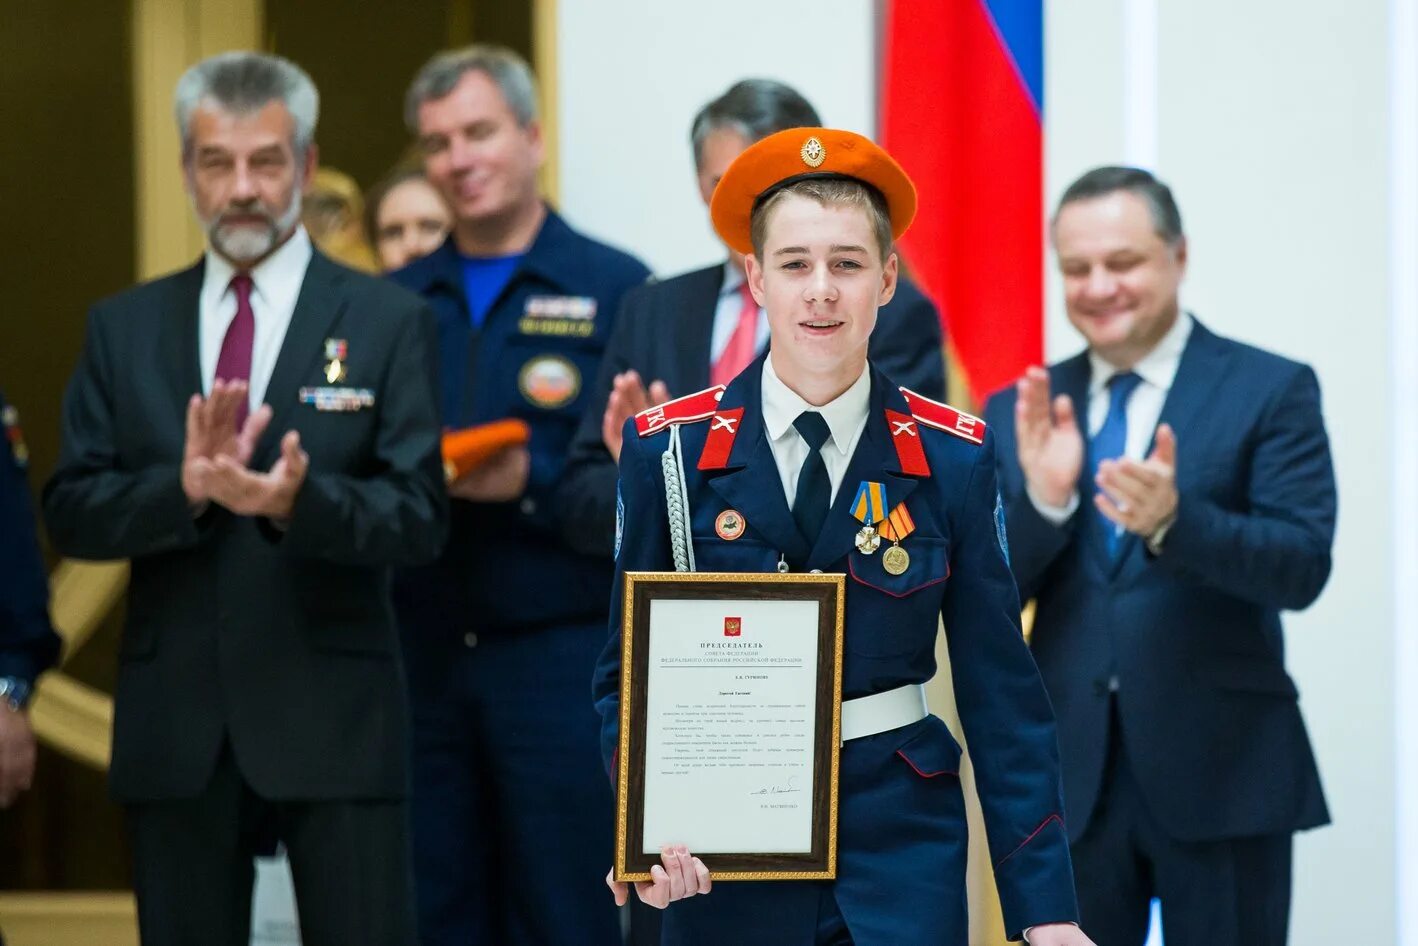 Награждение медалью. Награждение юных героев. Вручение медали герой России.